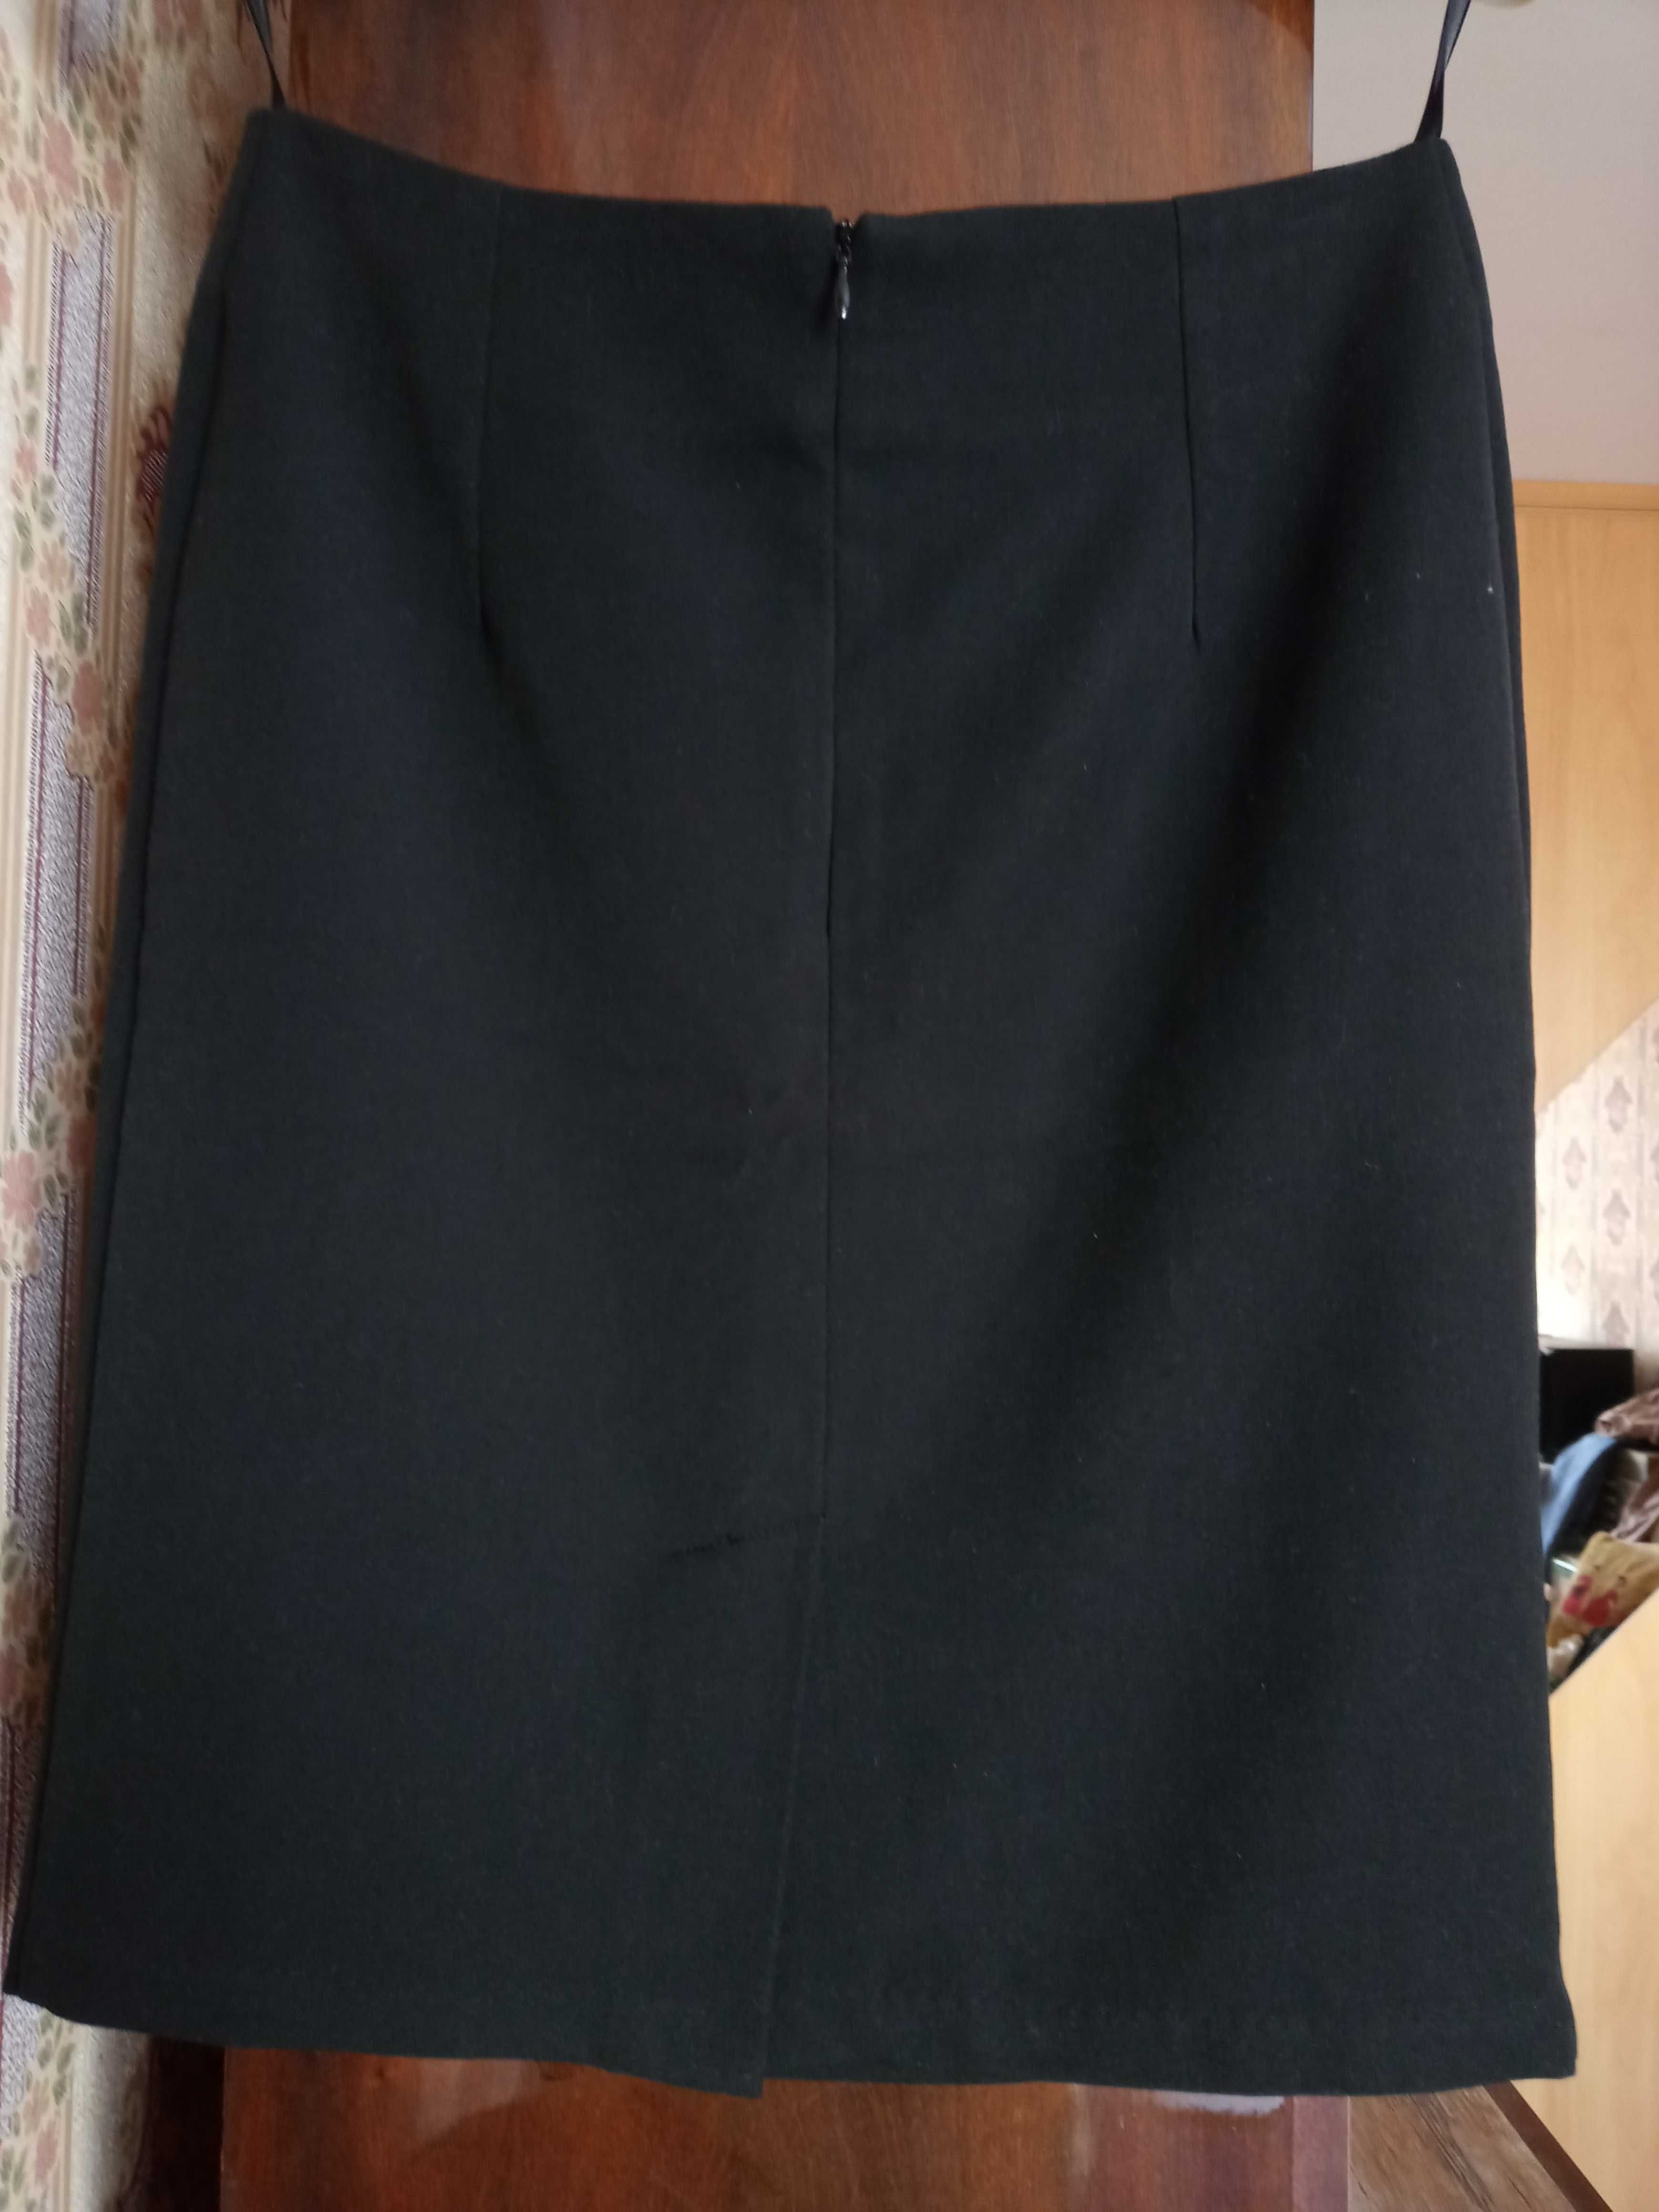 Spódnica elegancka wizytowa czarno-biała 36 Top Secret